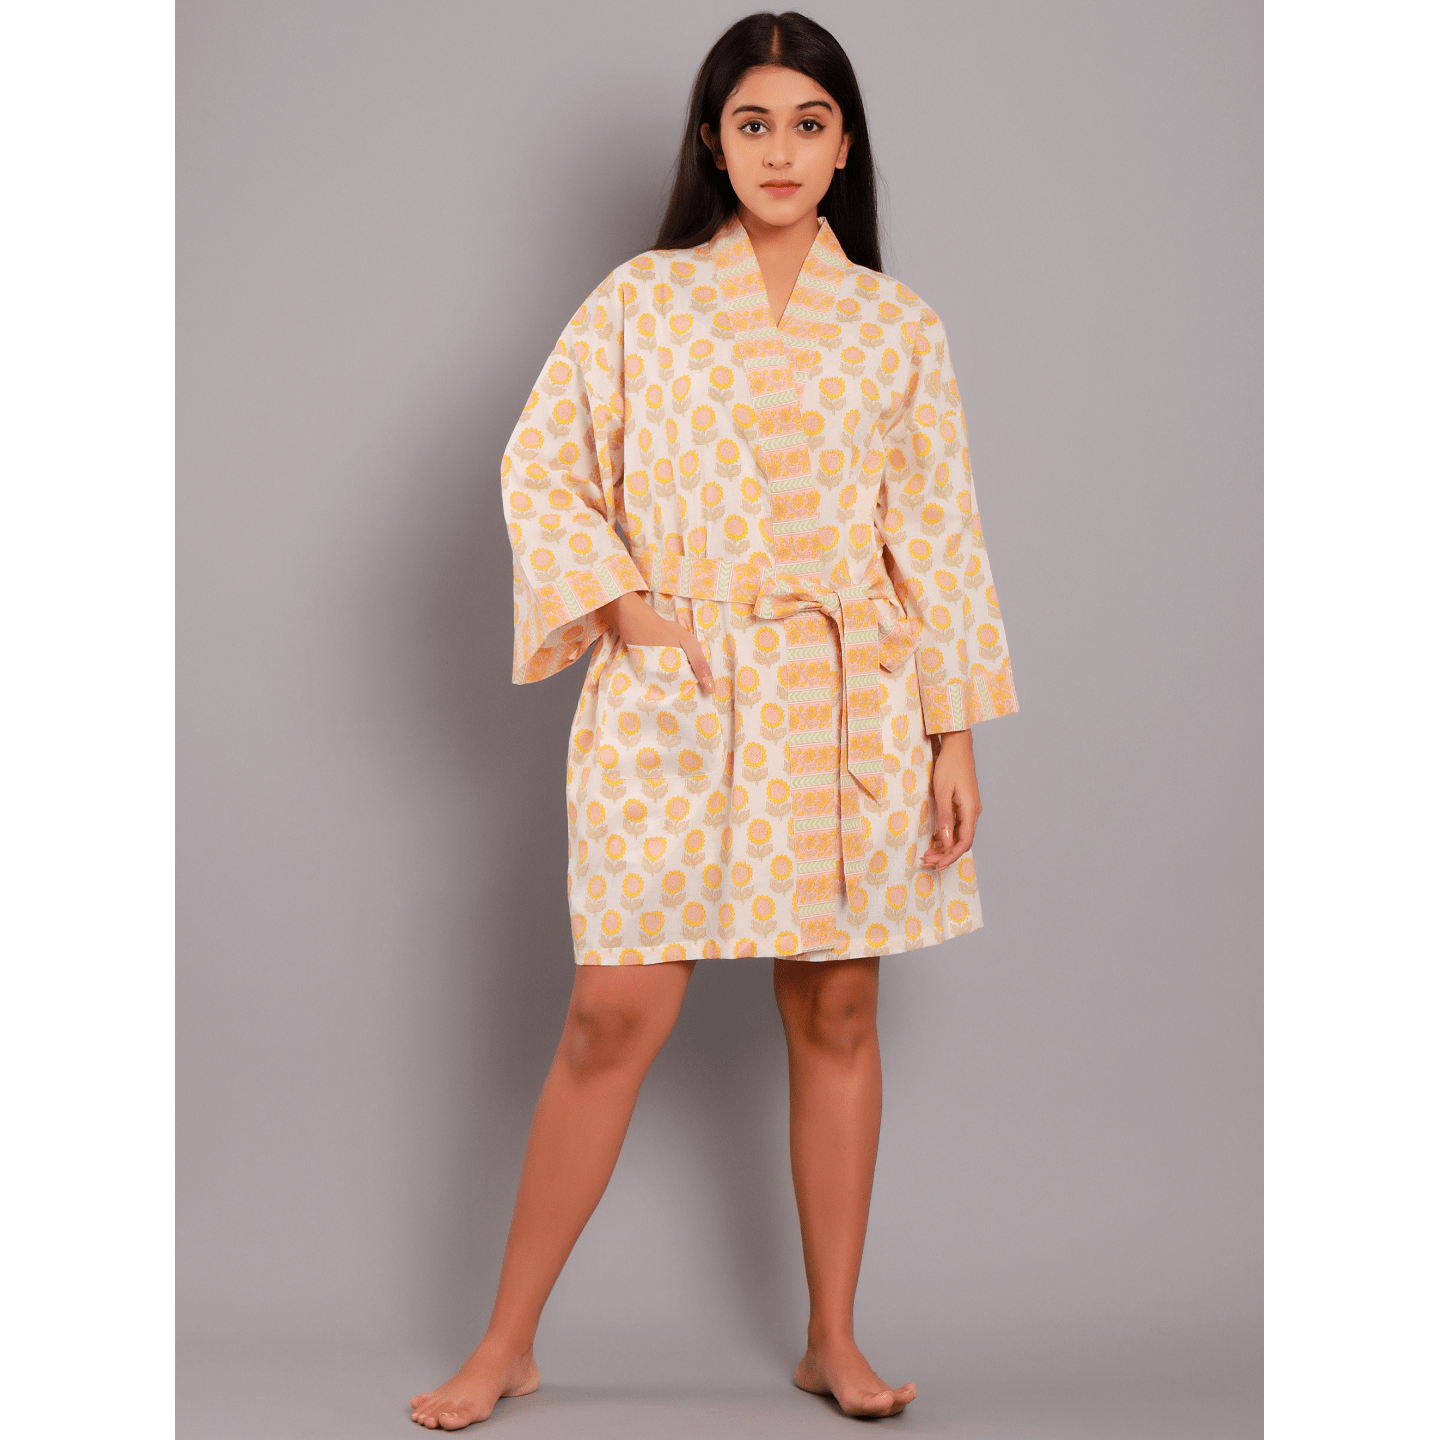 Block Printed Women bathrobe Sunflower yellow